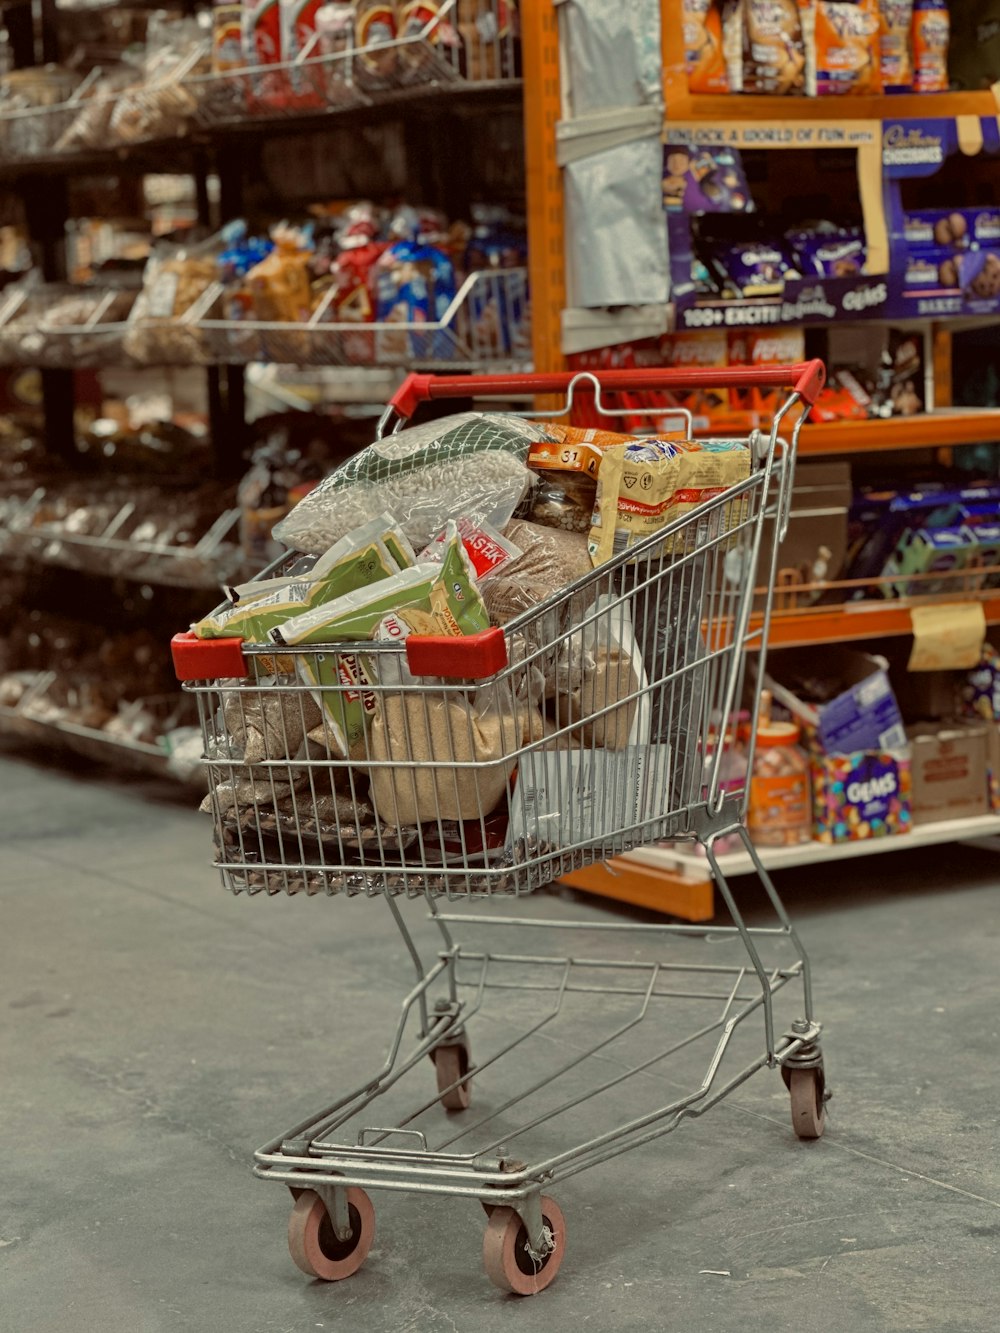 Un carrello della spesa pieno di generi alimentari in un negozio di alimentari